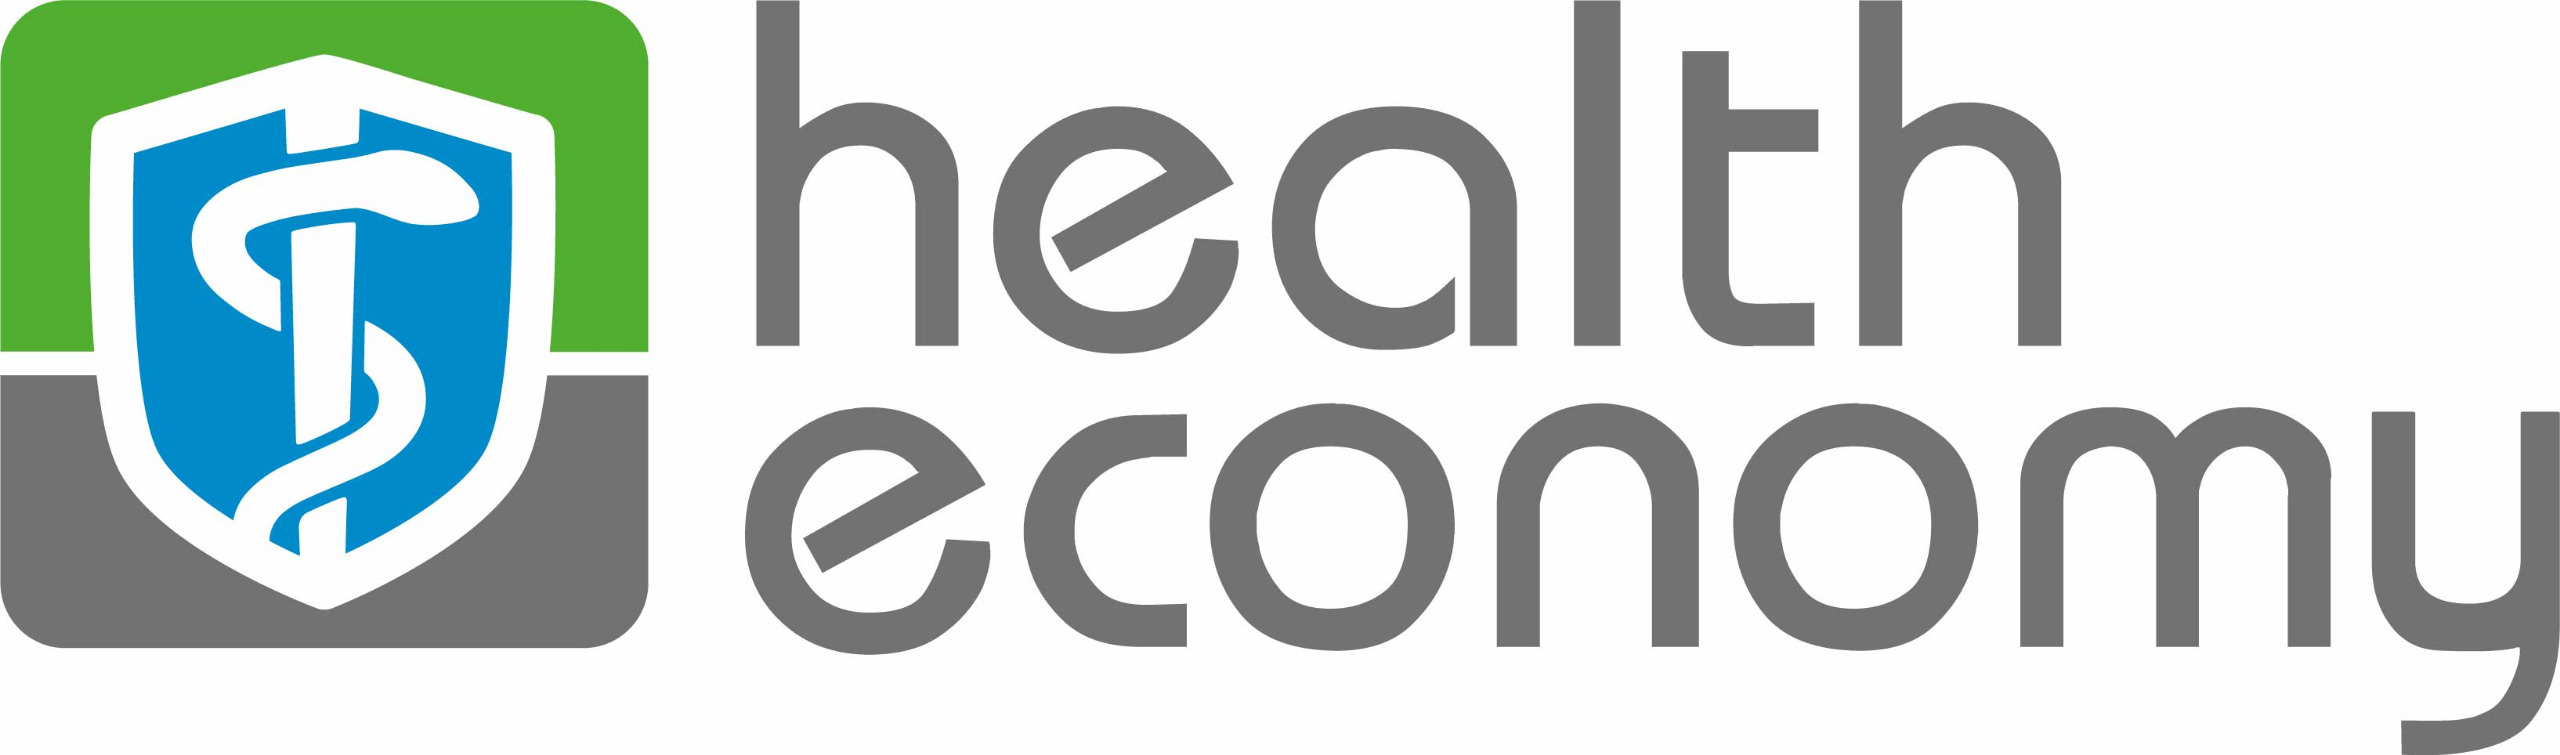 Section health economy